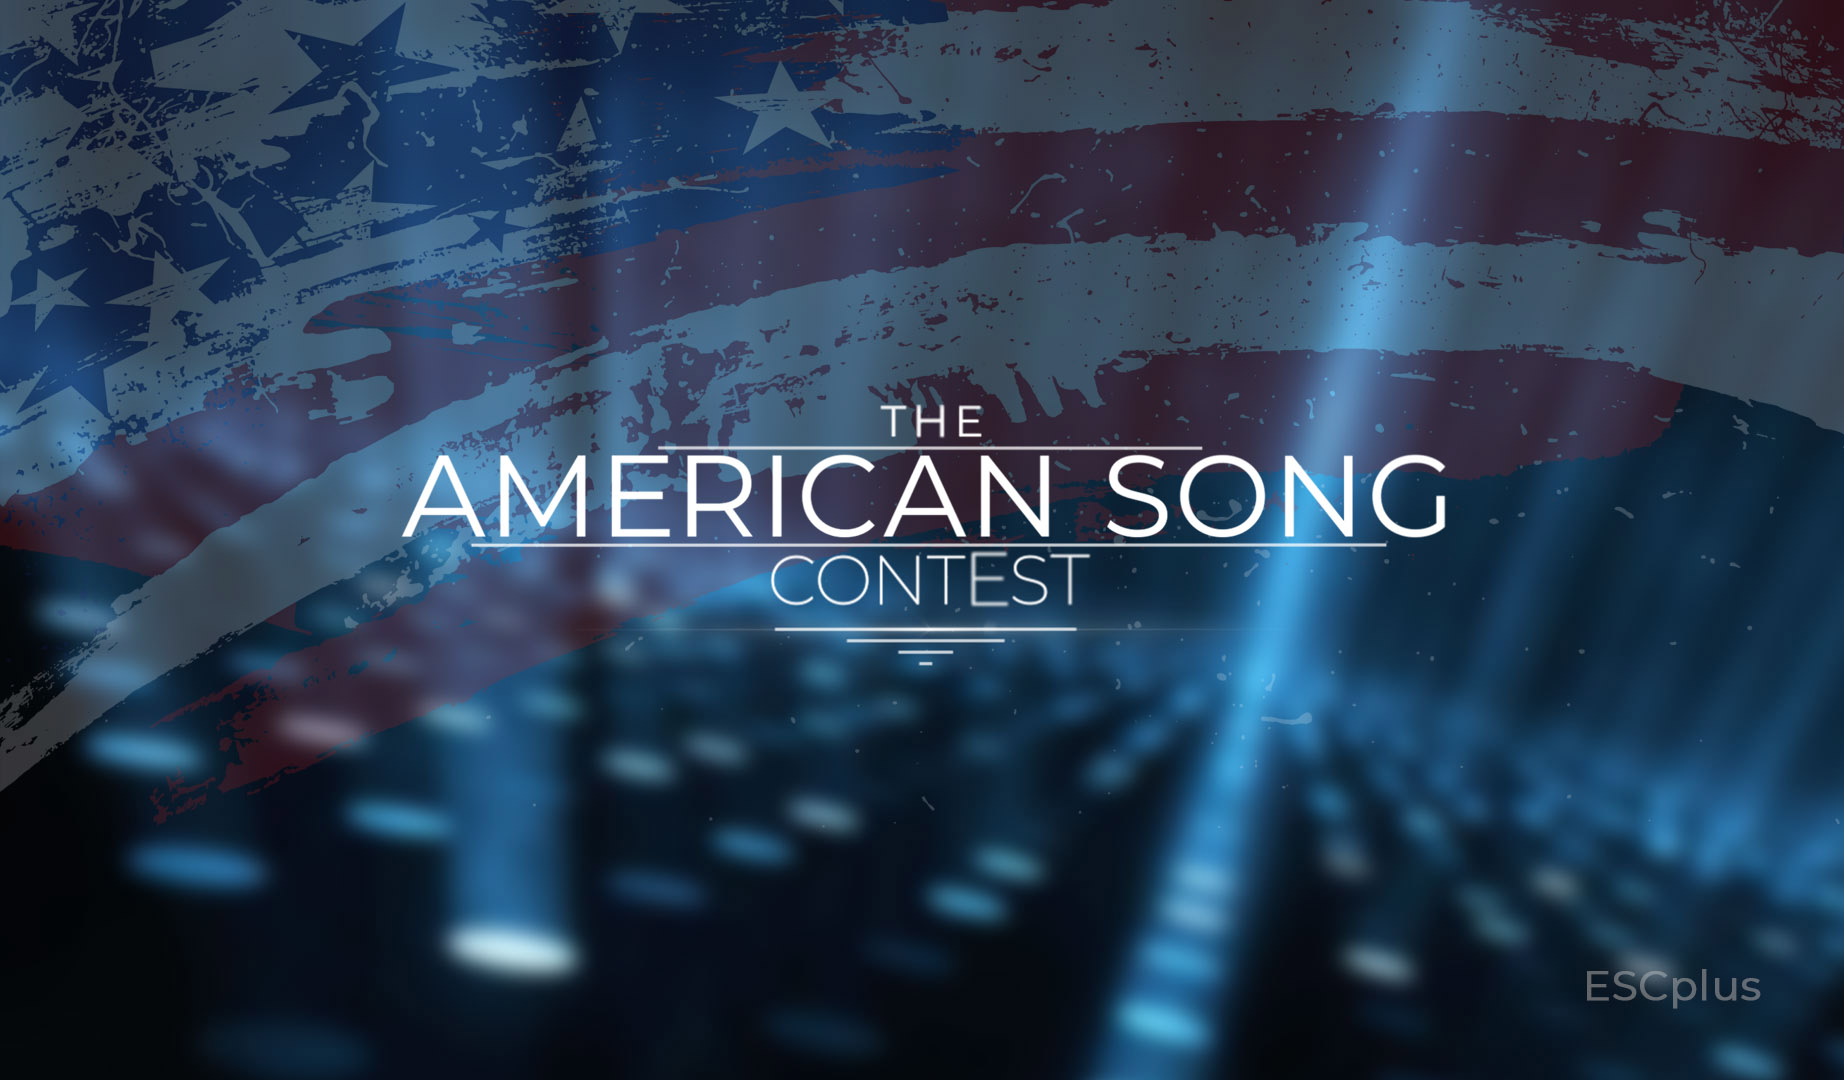 ¡El American Song Contest pone fecha a su posible primera edición en 2022!